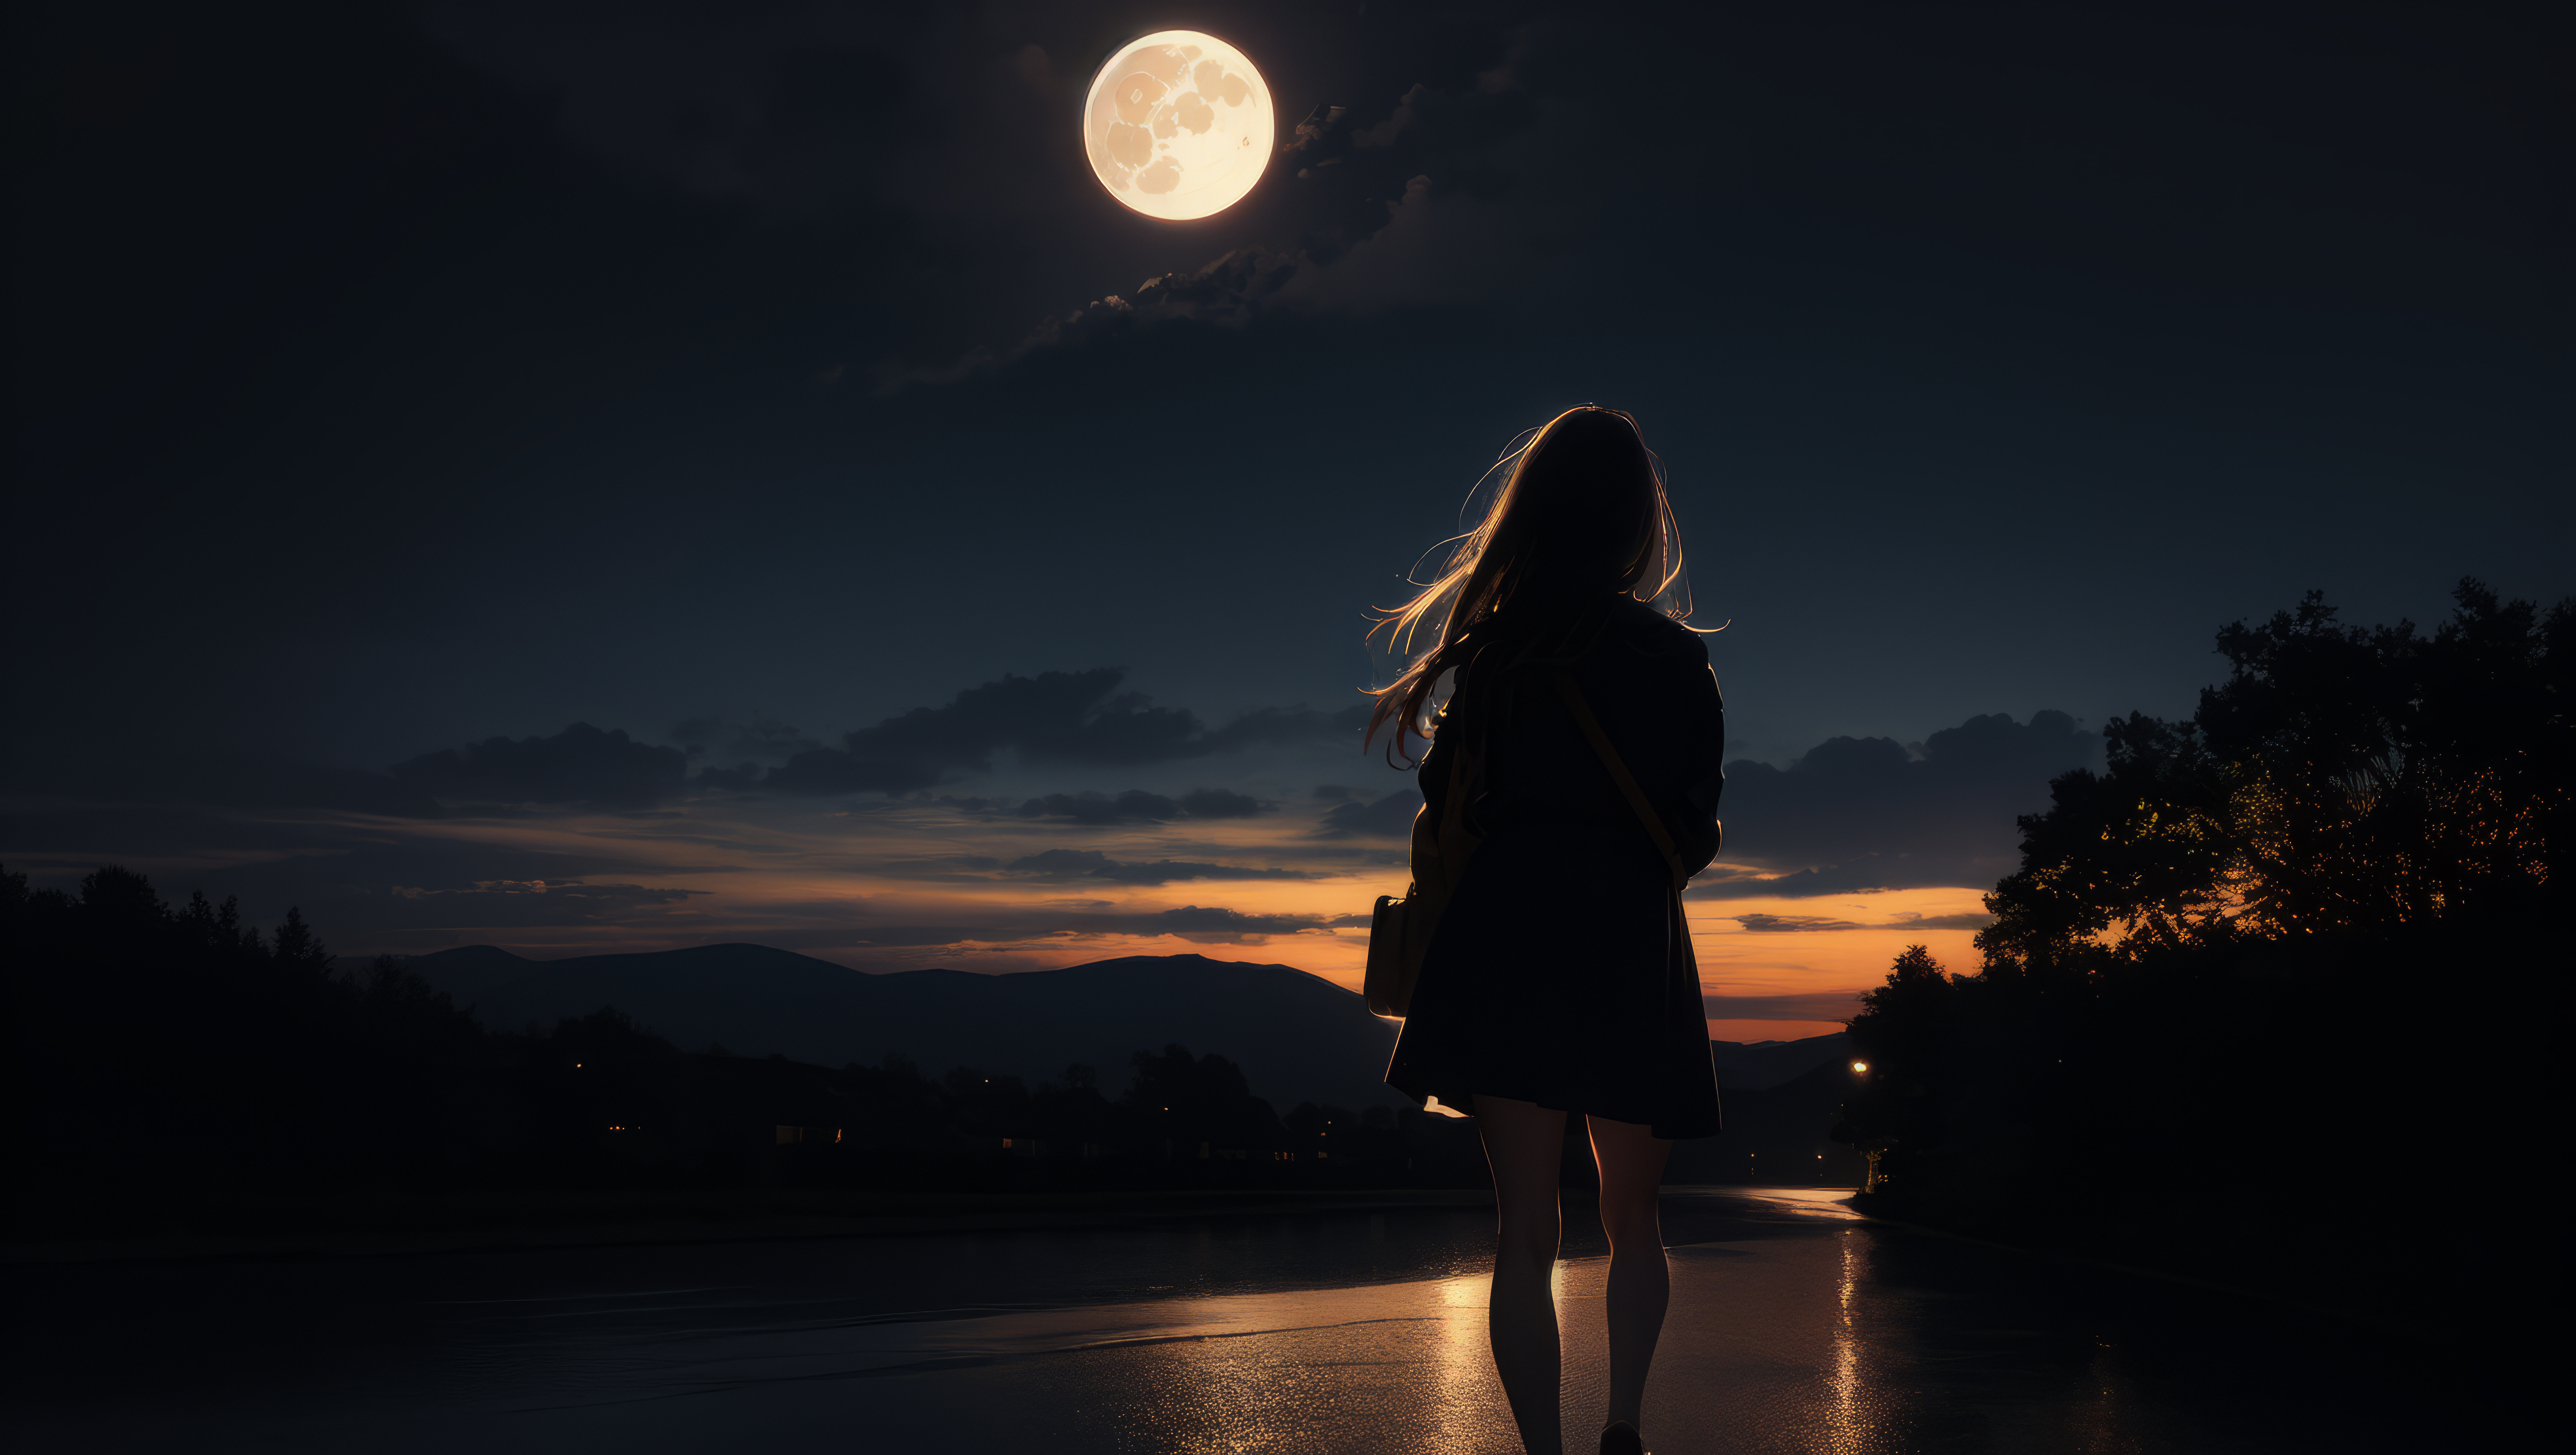 Девушка идет по мокрому асфальту, глубокой ночью и на встречу ей светит ярко луна